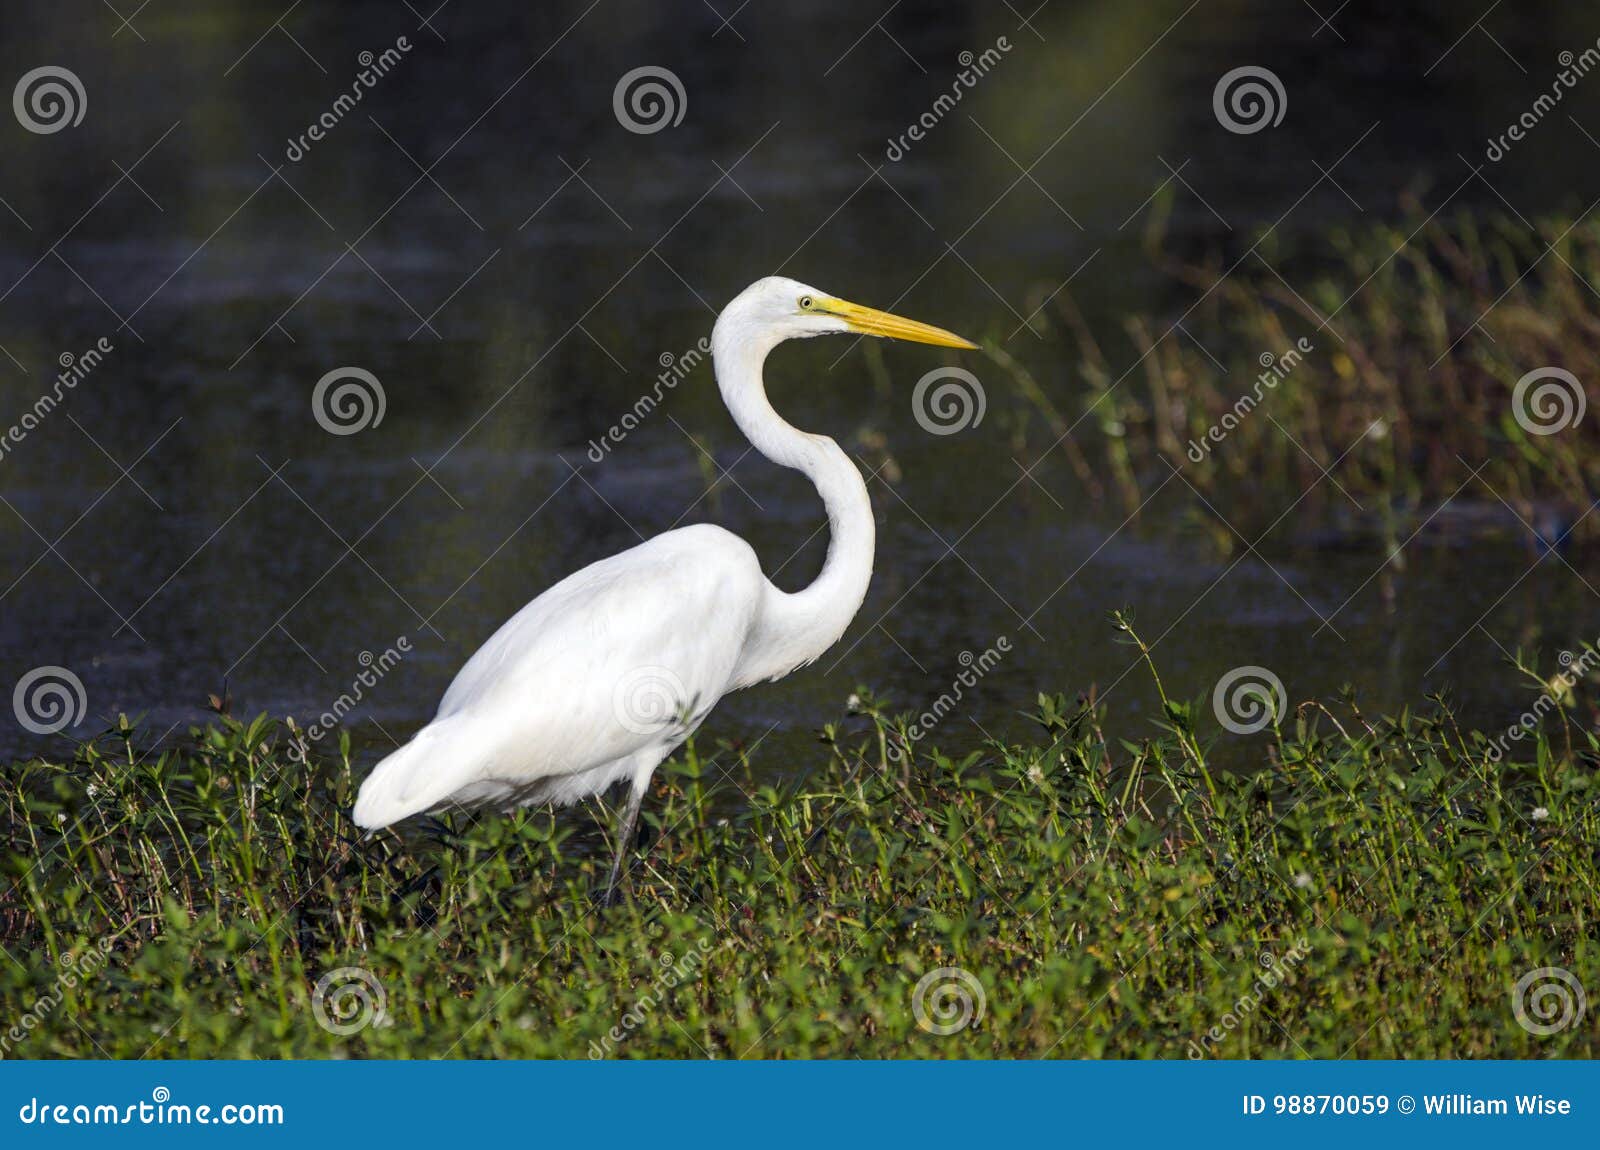 White Great Egret Long-legged Wading Bird Stock Image - Image of open,  beak: 98870059